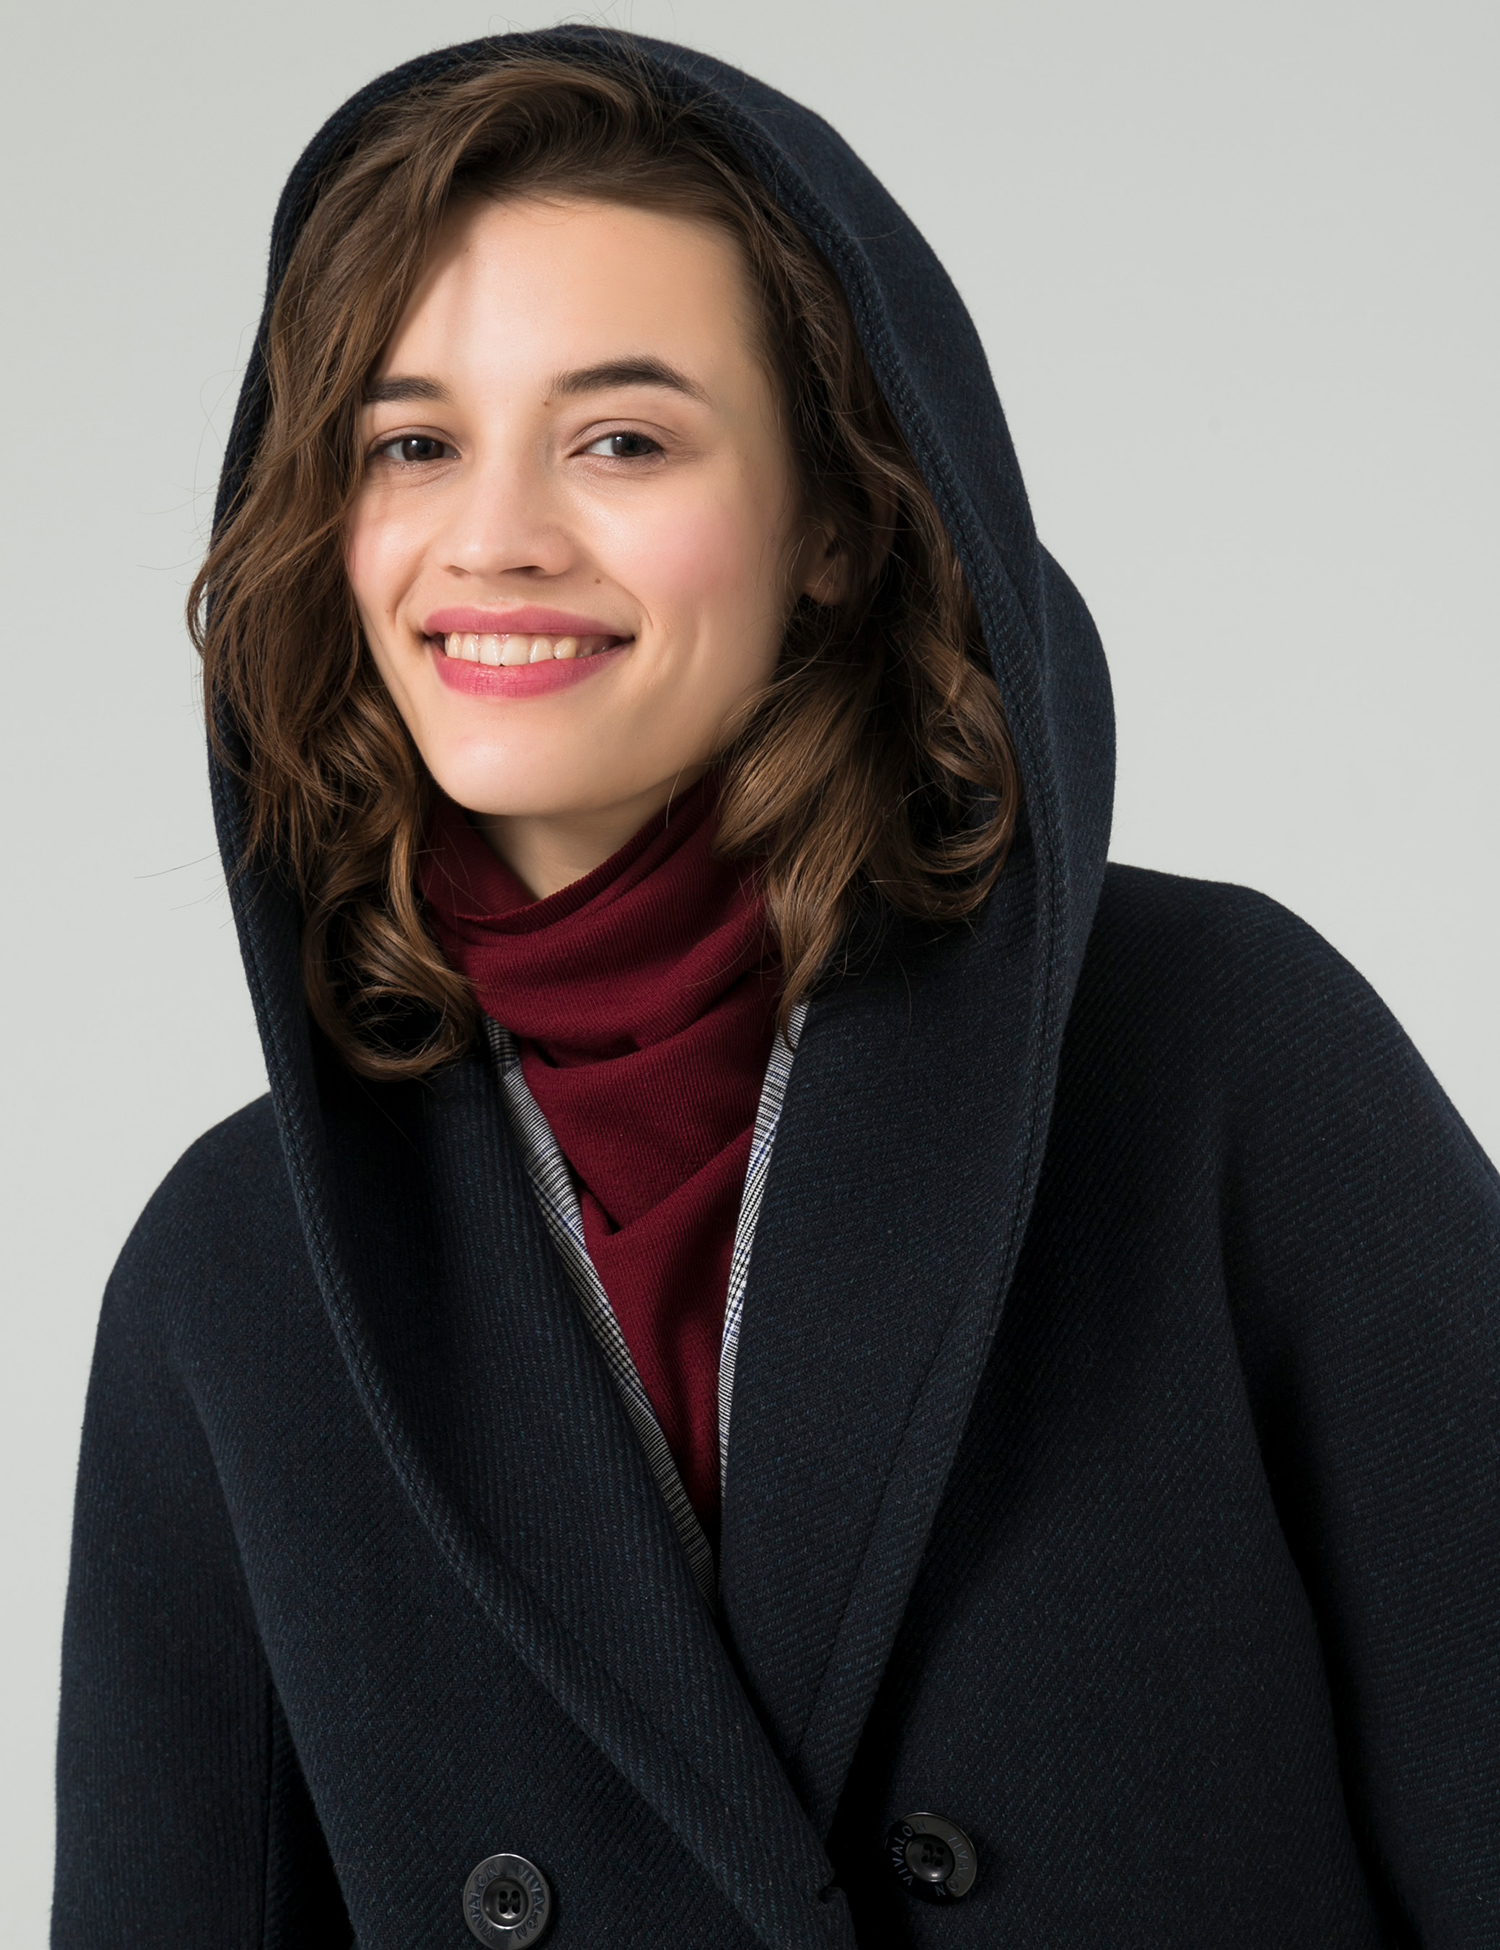 Картинка Жіноче чорне пальто з капюшоном